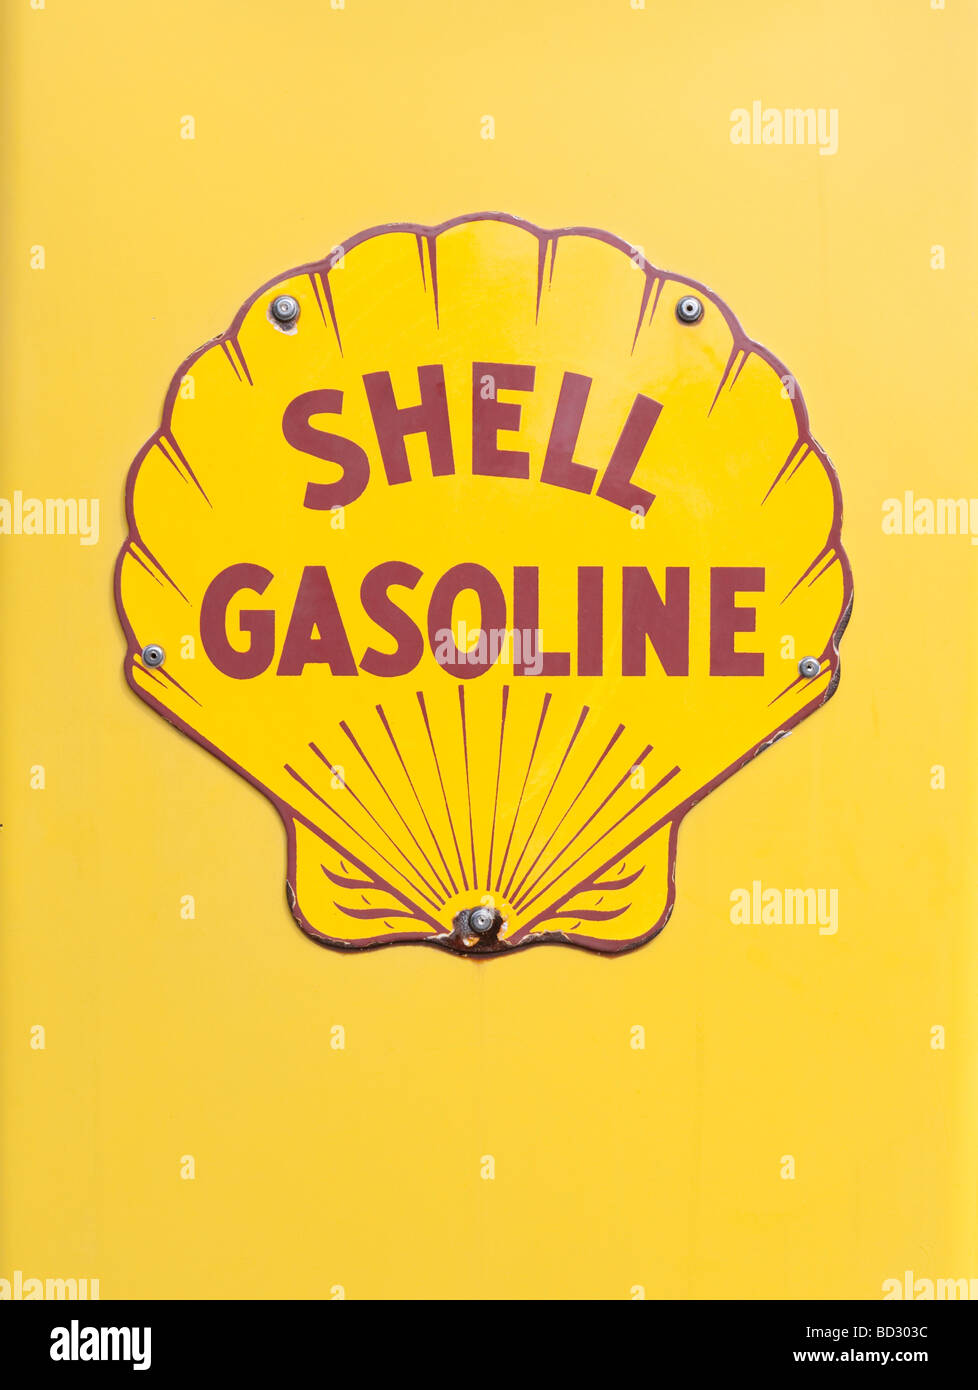 Dettaglio del logo shell sulla vecchia pompa di benzina Foto Stock